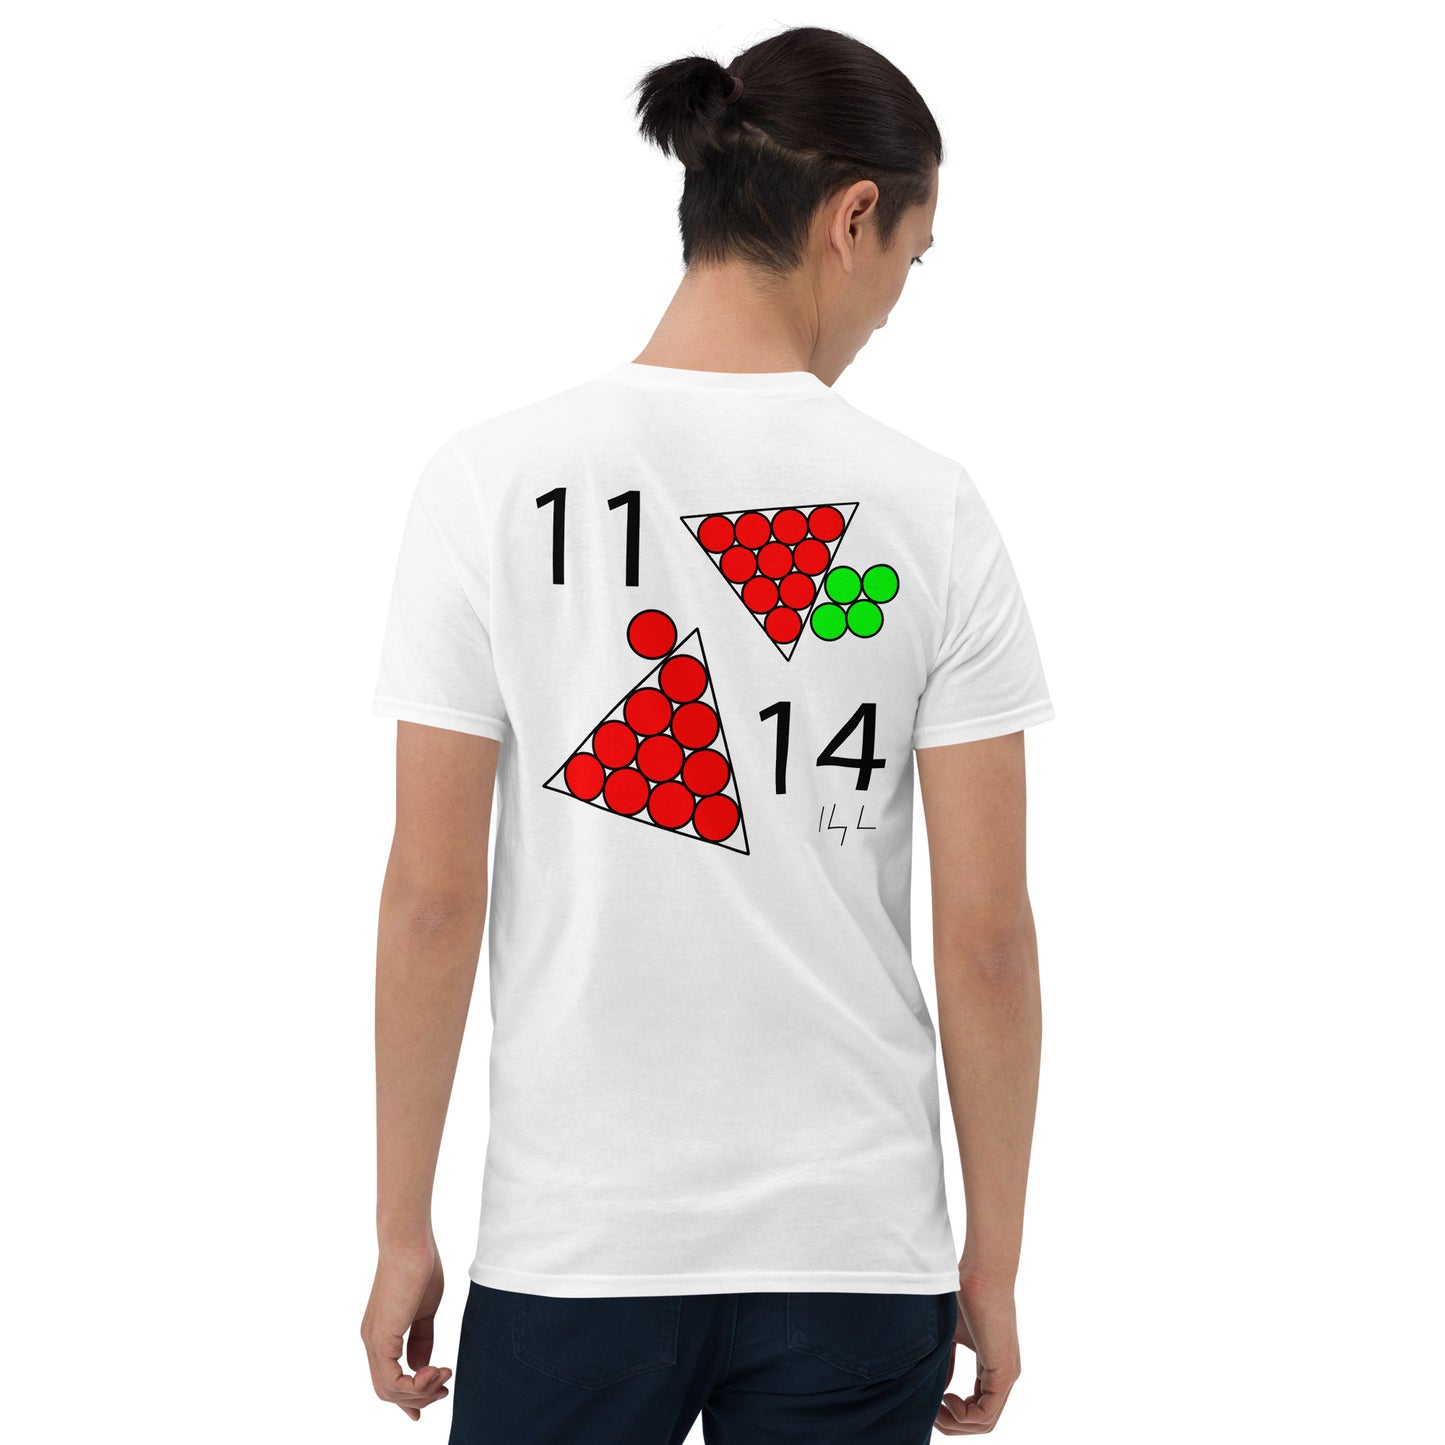 November 14th Red T-Shirt at 11:14 1114